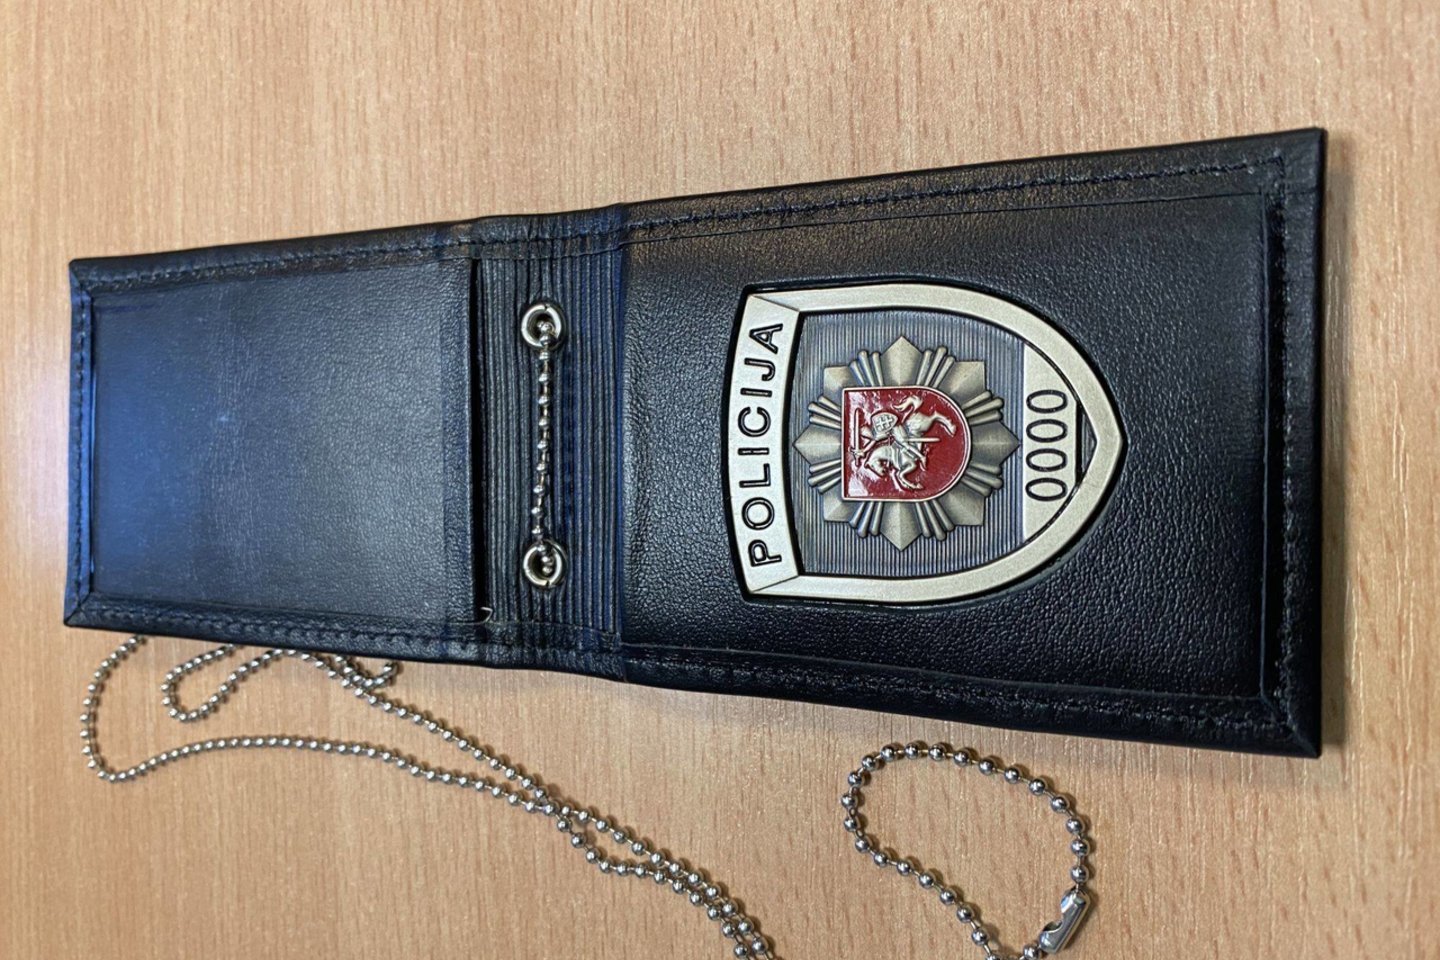 Policijos pareigūnai taip pat turi specialius dėklus su policijos ženklu.<br>Lietuvos policijos nuotr.